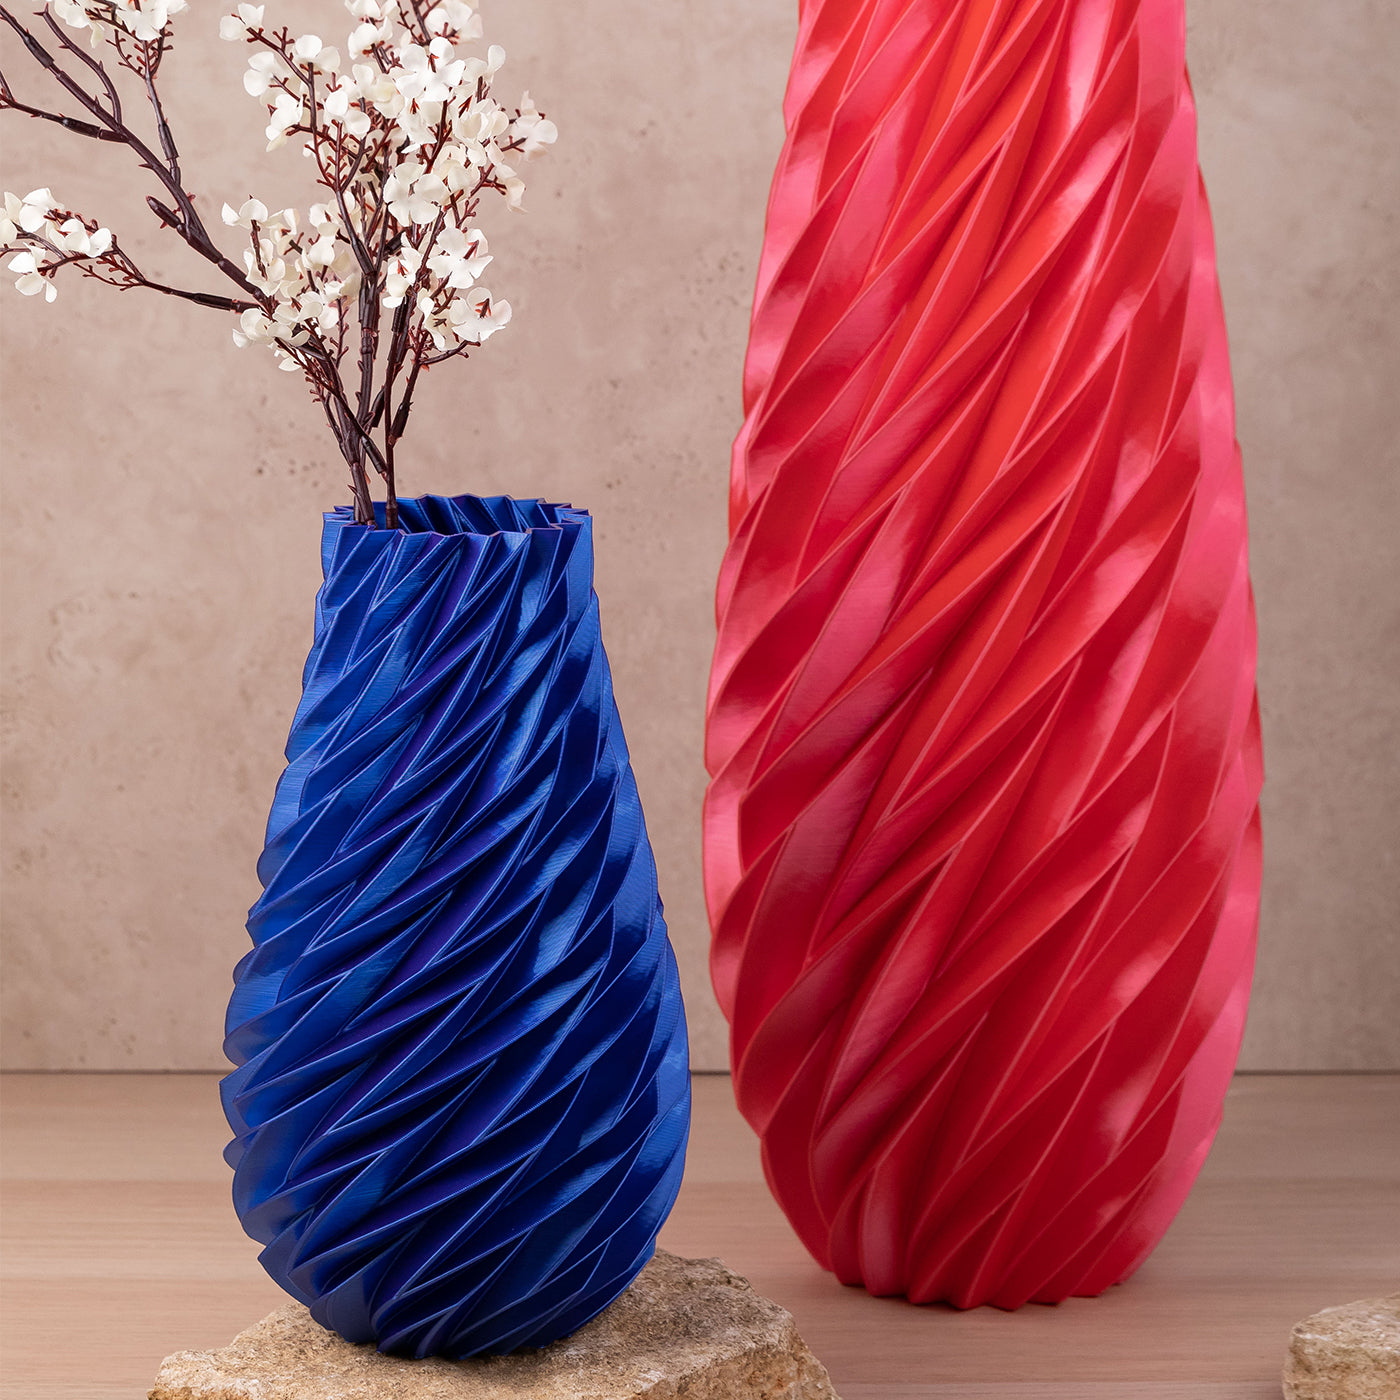 Saphira Red Vase-Sculpture - Alternative view 1